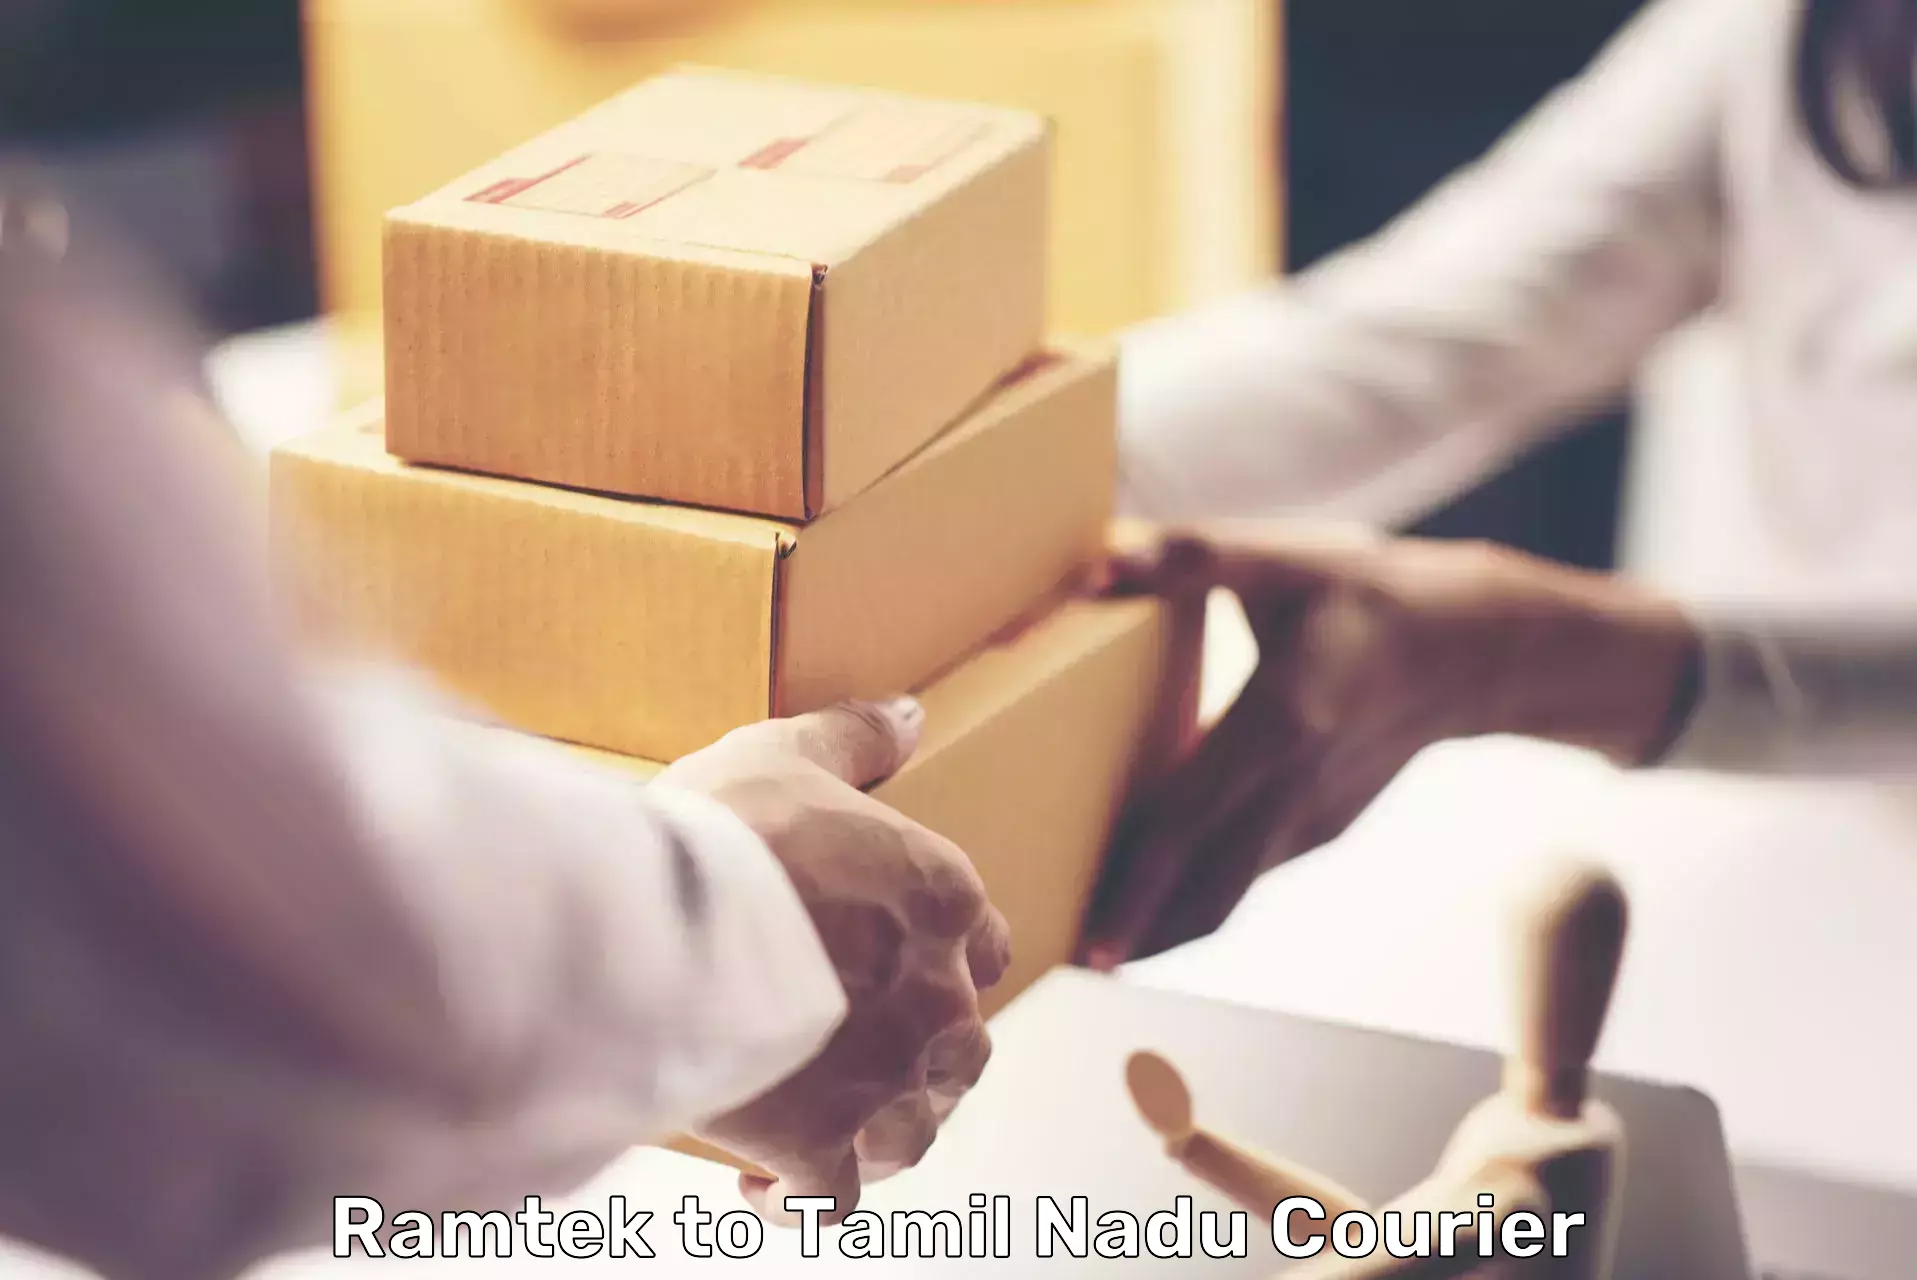 Courier service booking Ramtek to Kudankulam